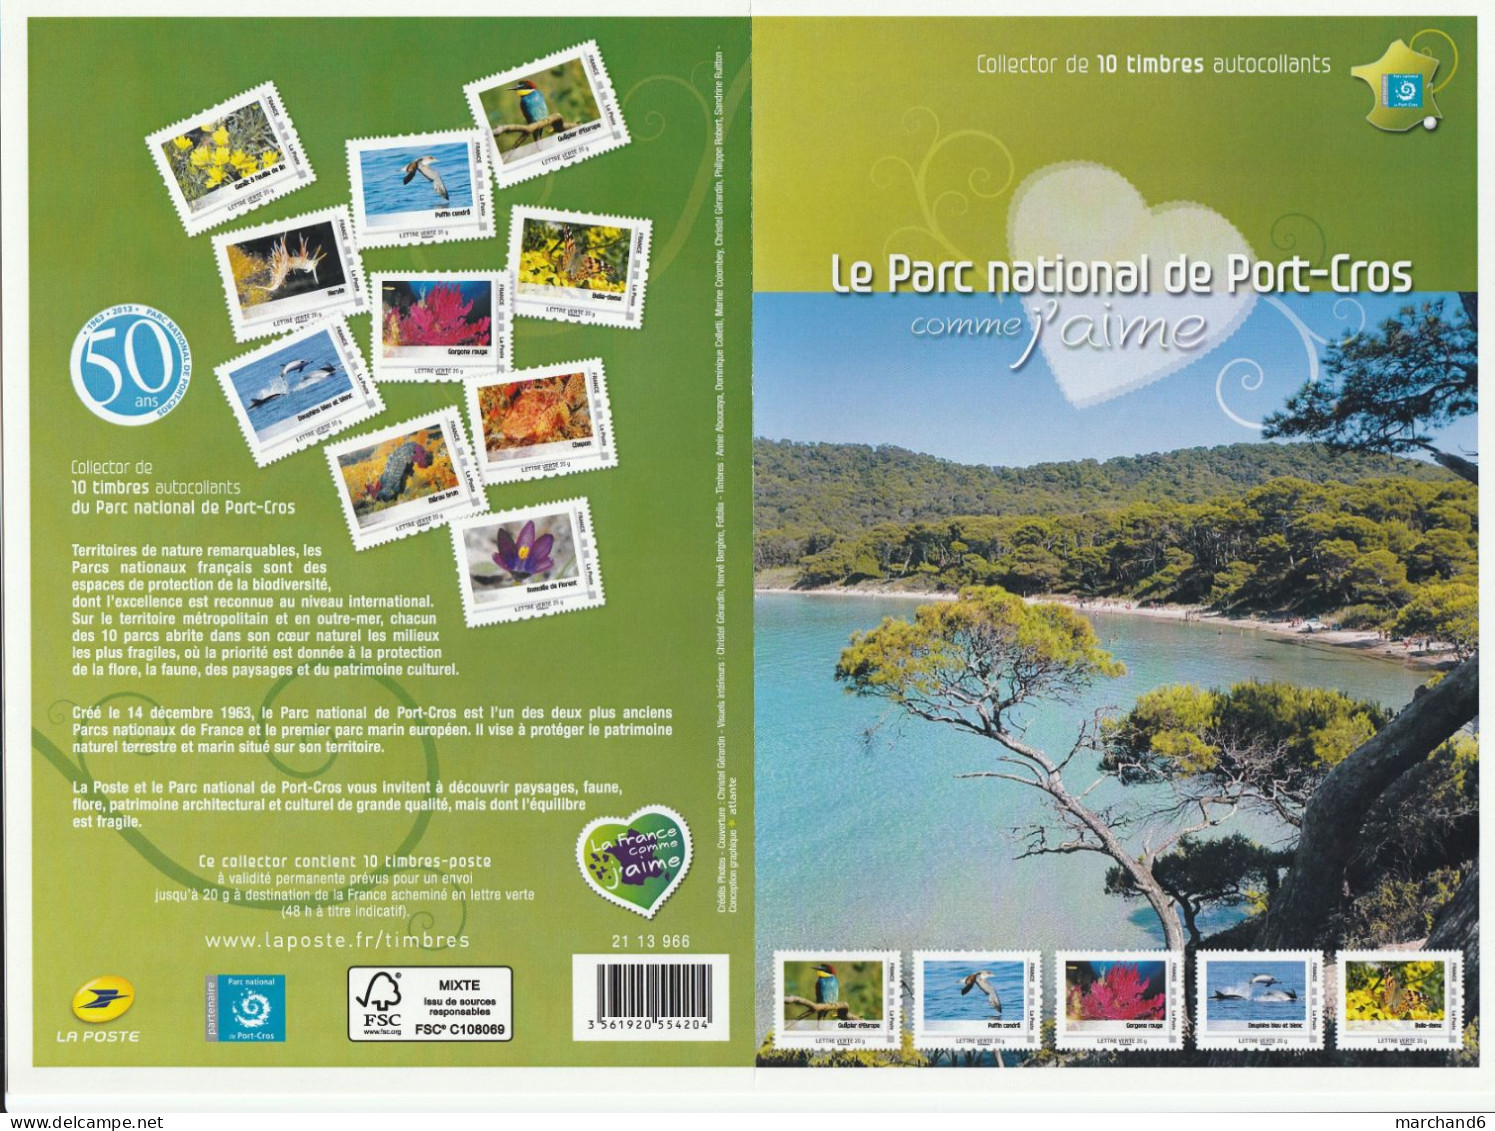 Feuillet Collector Le Parc National De Port Cros France 2013 IDT L V 20gr 10 Timbres Autoadhésifs N°197 - Collectors